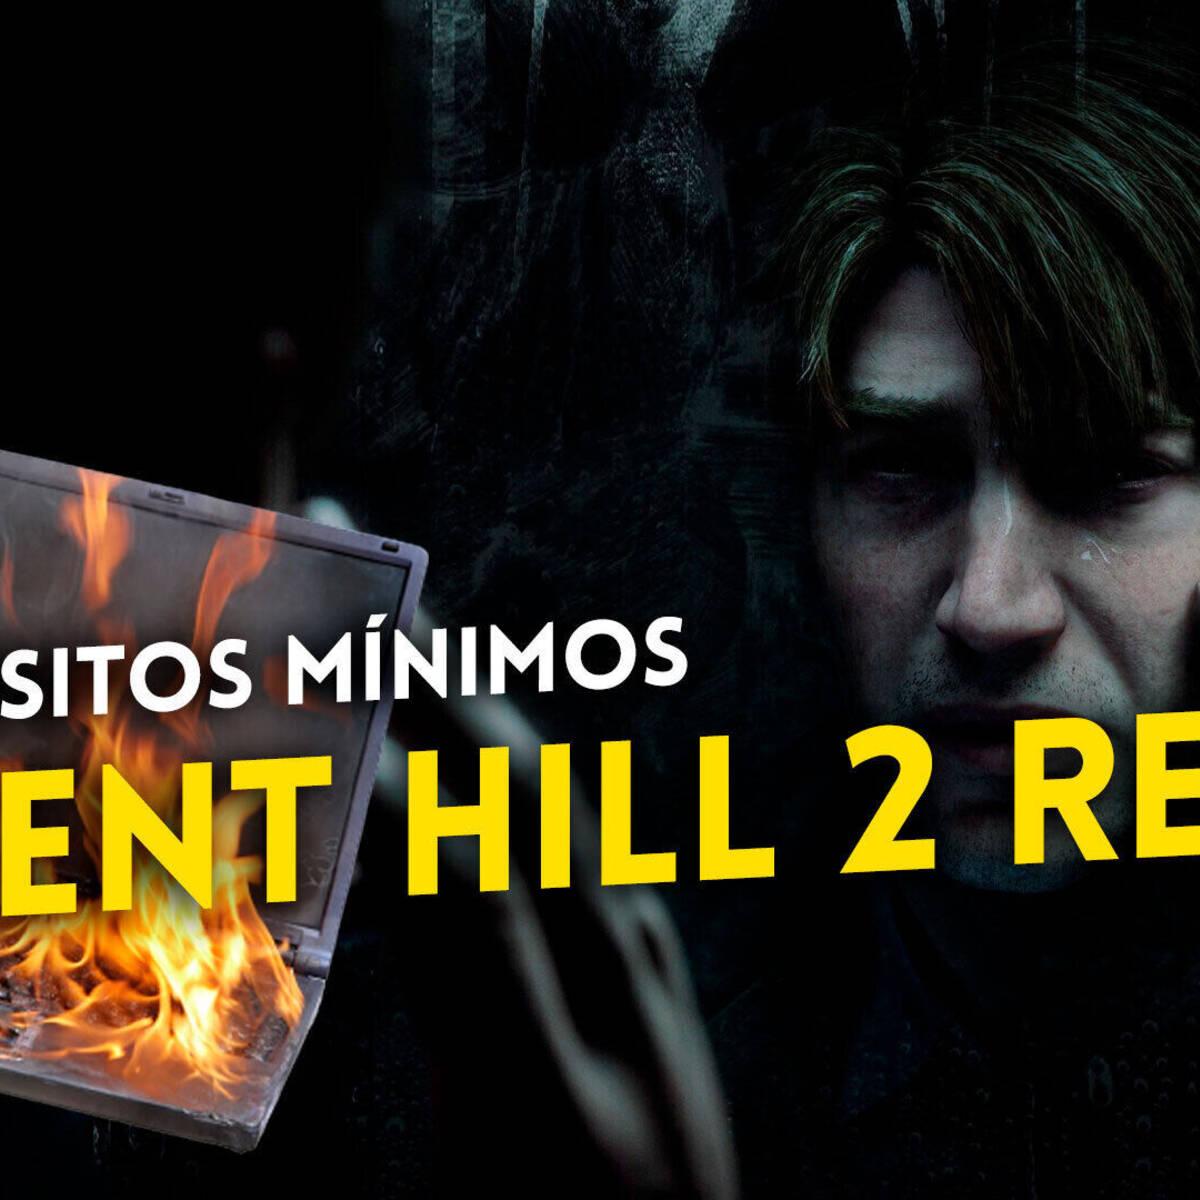 Silent Hill 2 Remake: confira os requisitos mínimos e recomendados para PC